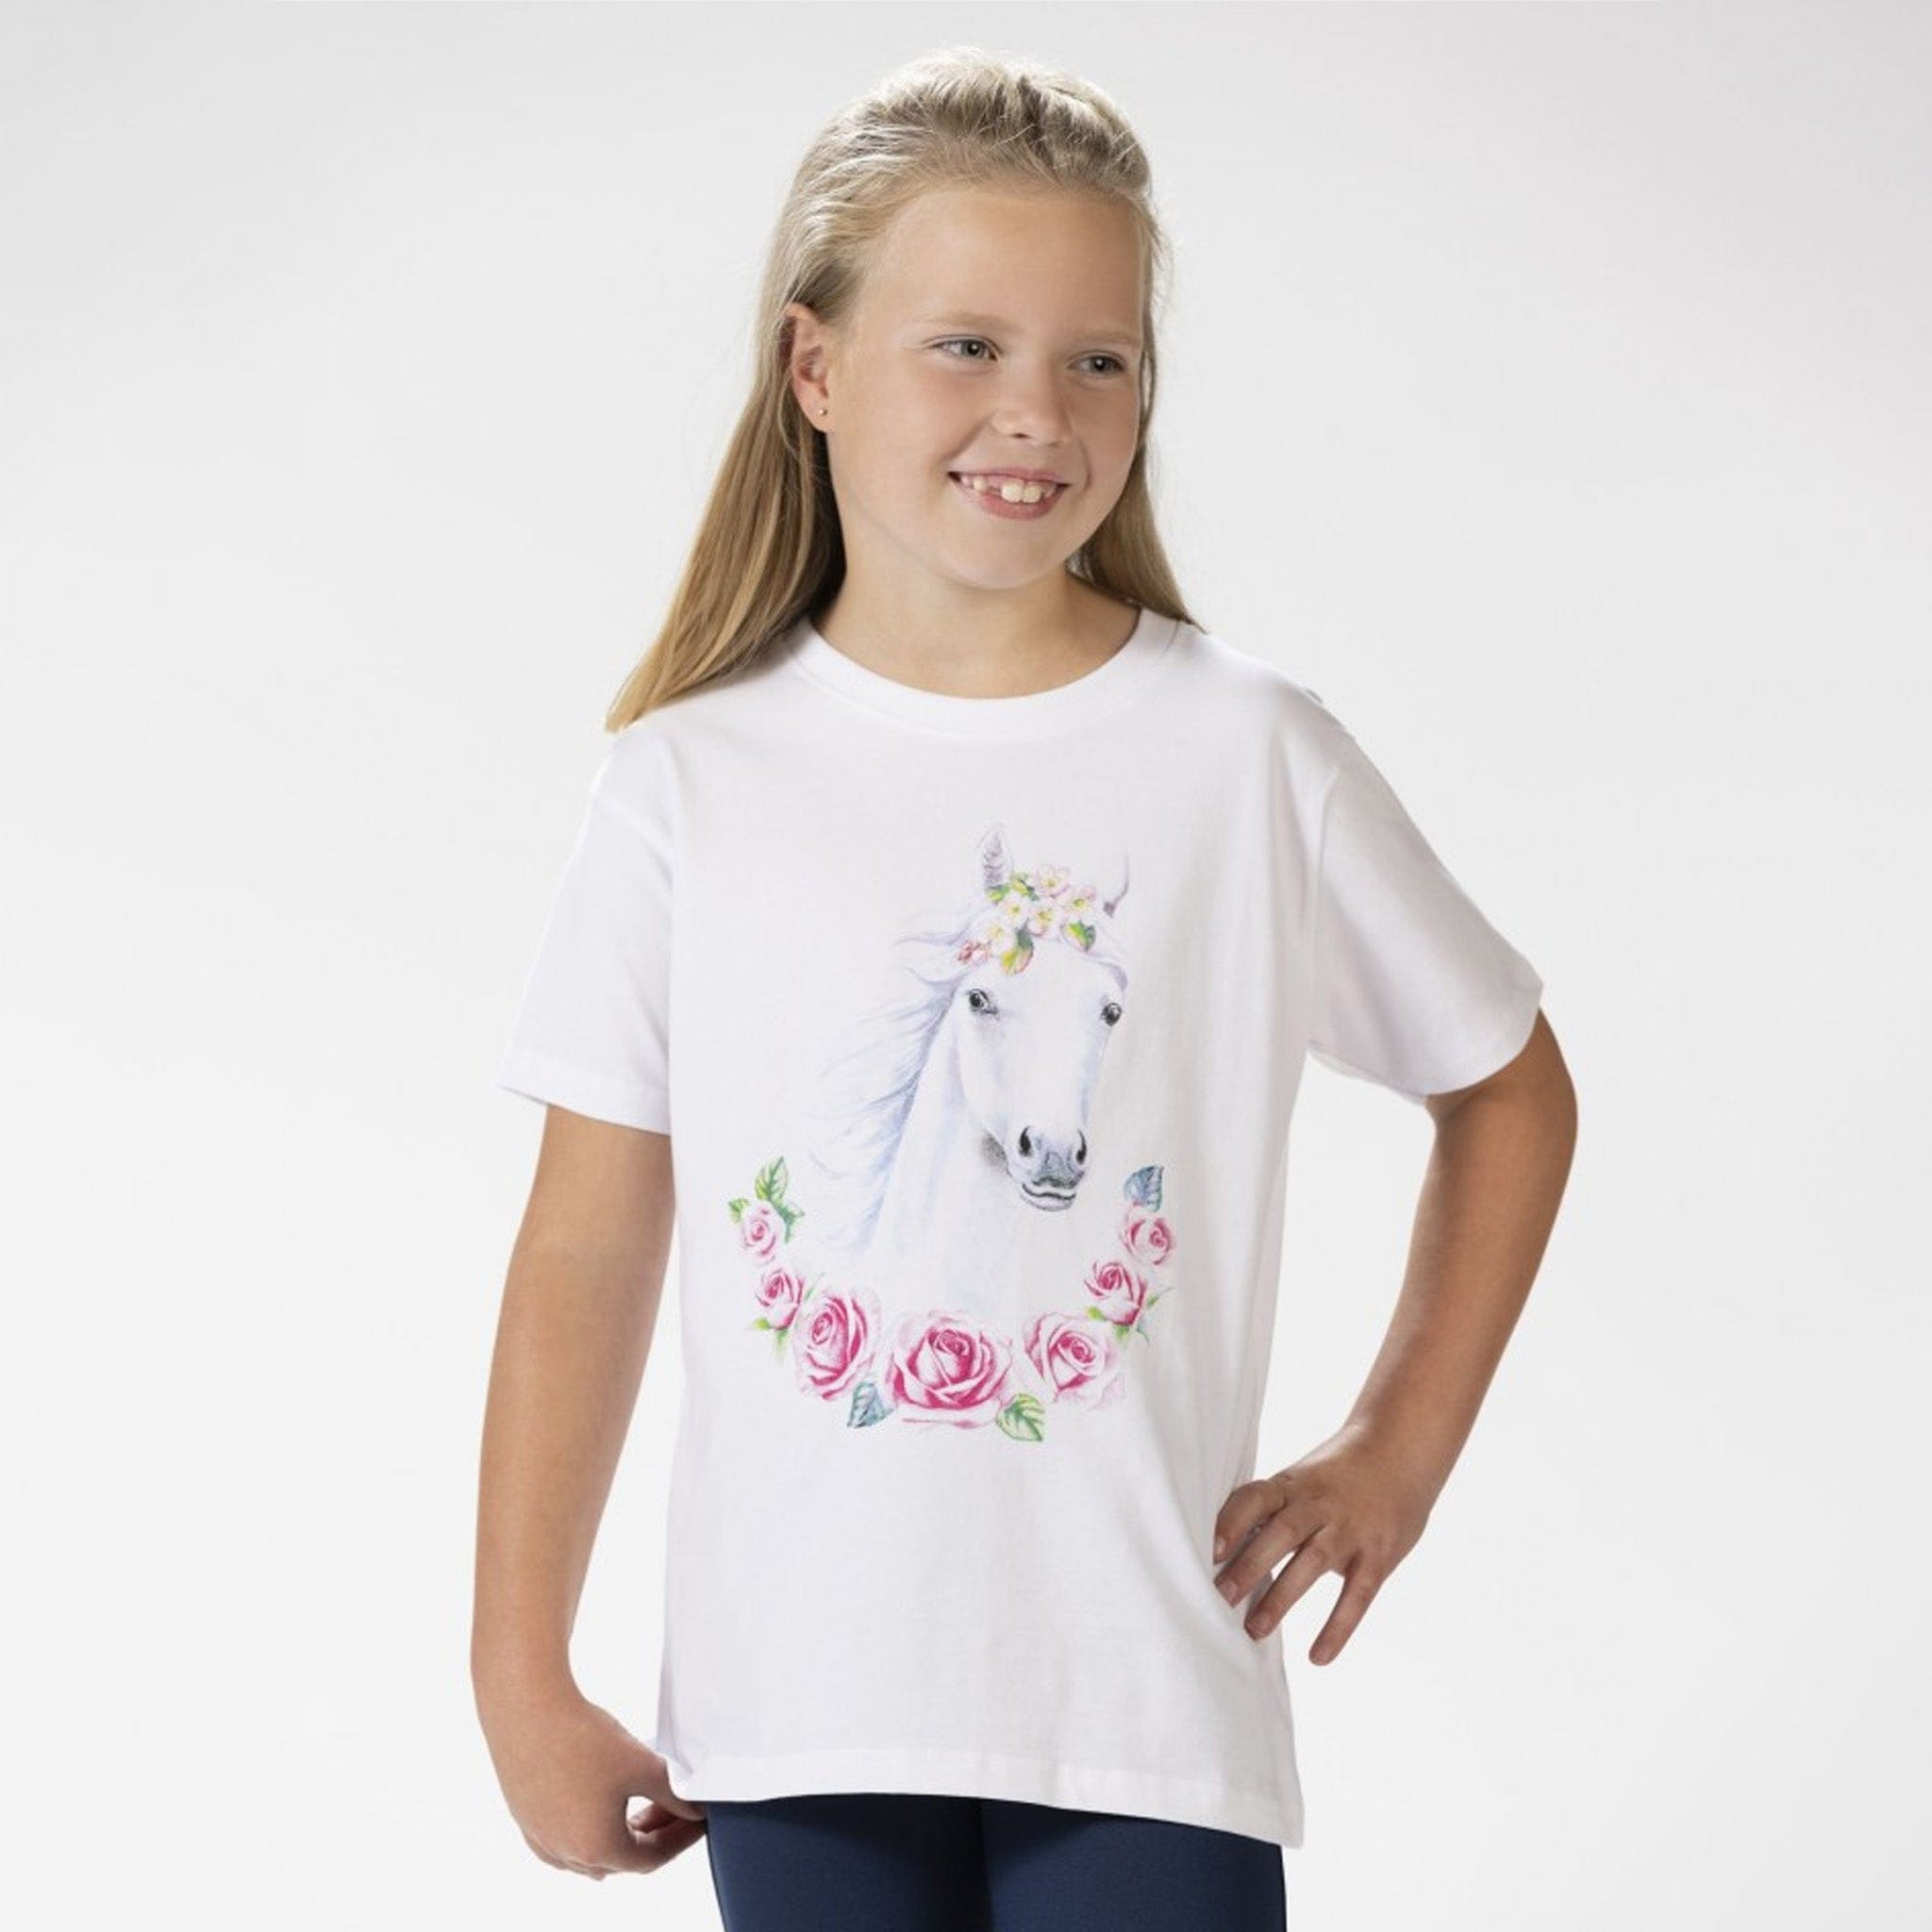 HKM Children's Pretty Horse T-Shirt 13130 White Front On Child